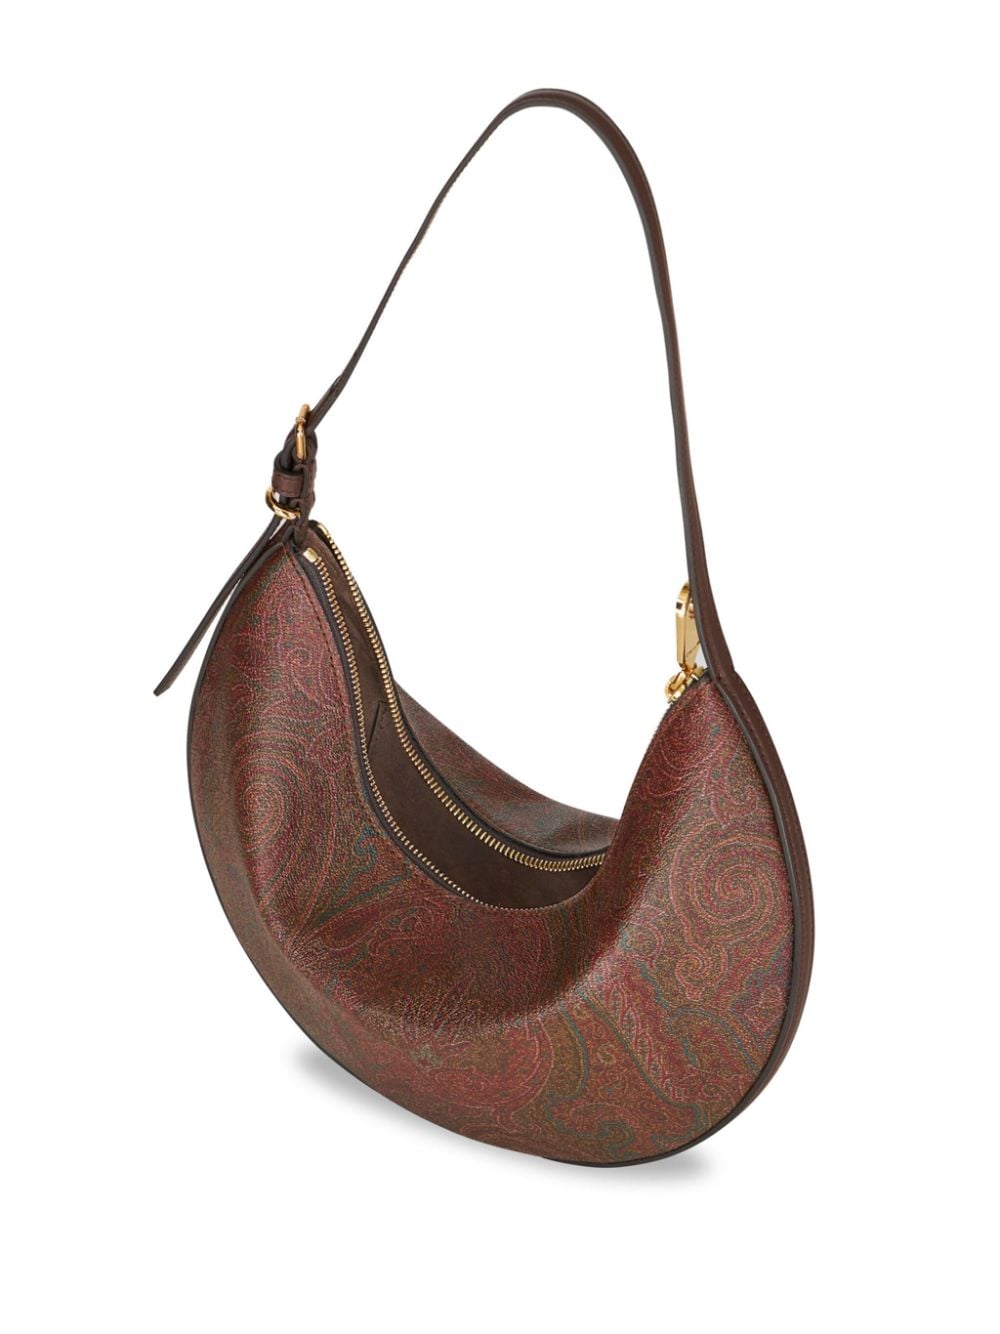 ETRO Brown Medium-Sized Hobo Handbag for Women